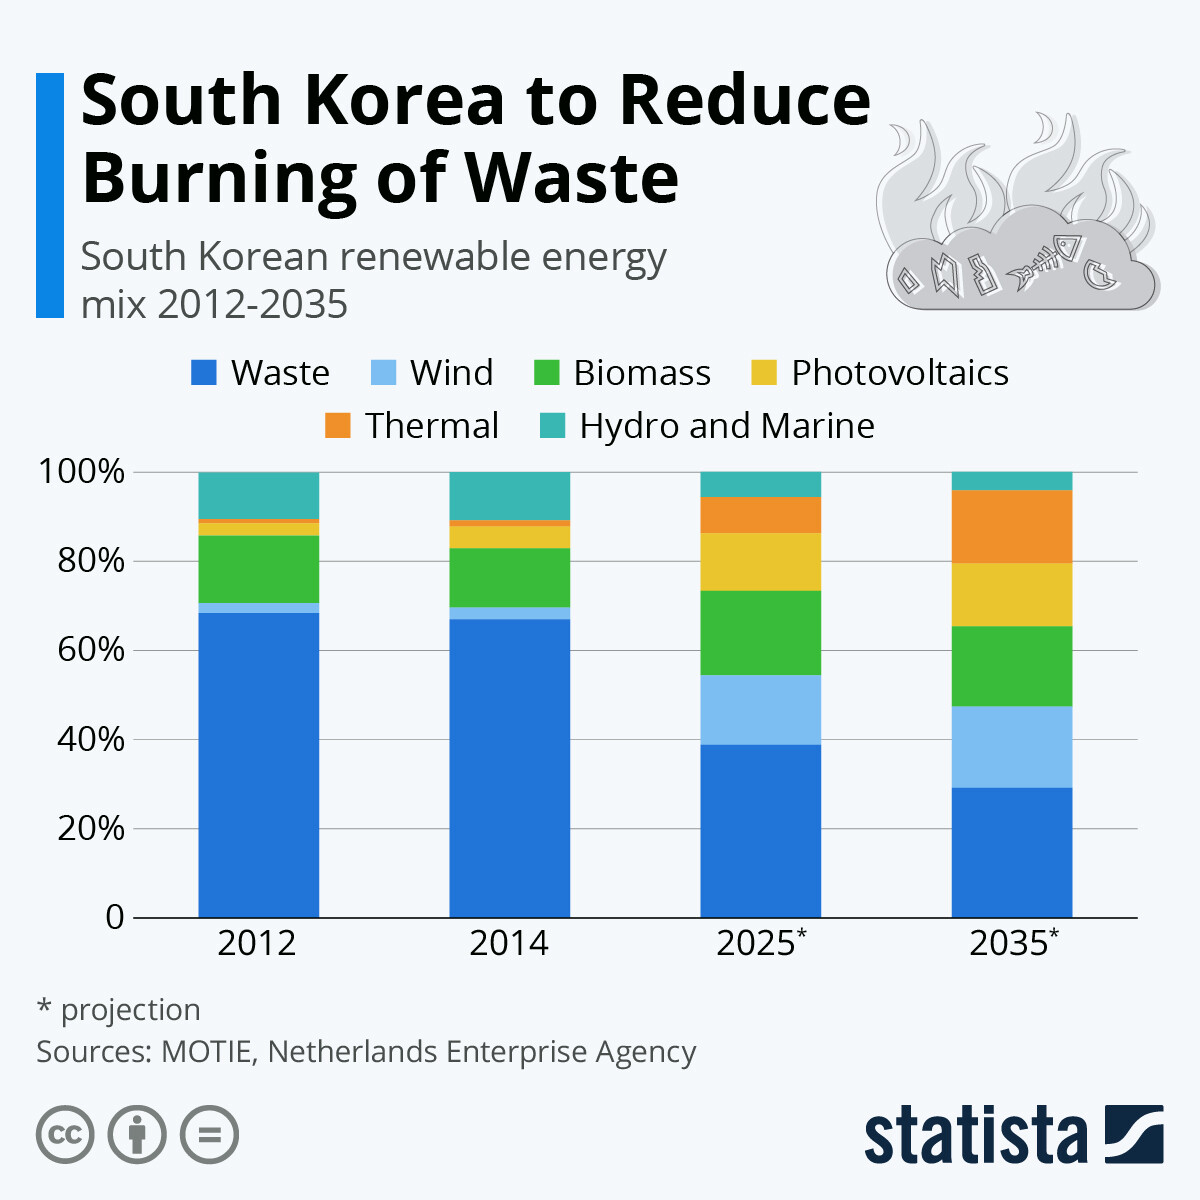 インフォグラフィック: 韓国の廃棄物のジレンマ | スタティスタ 